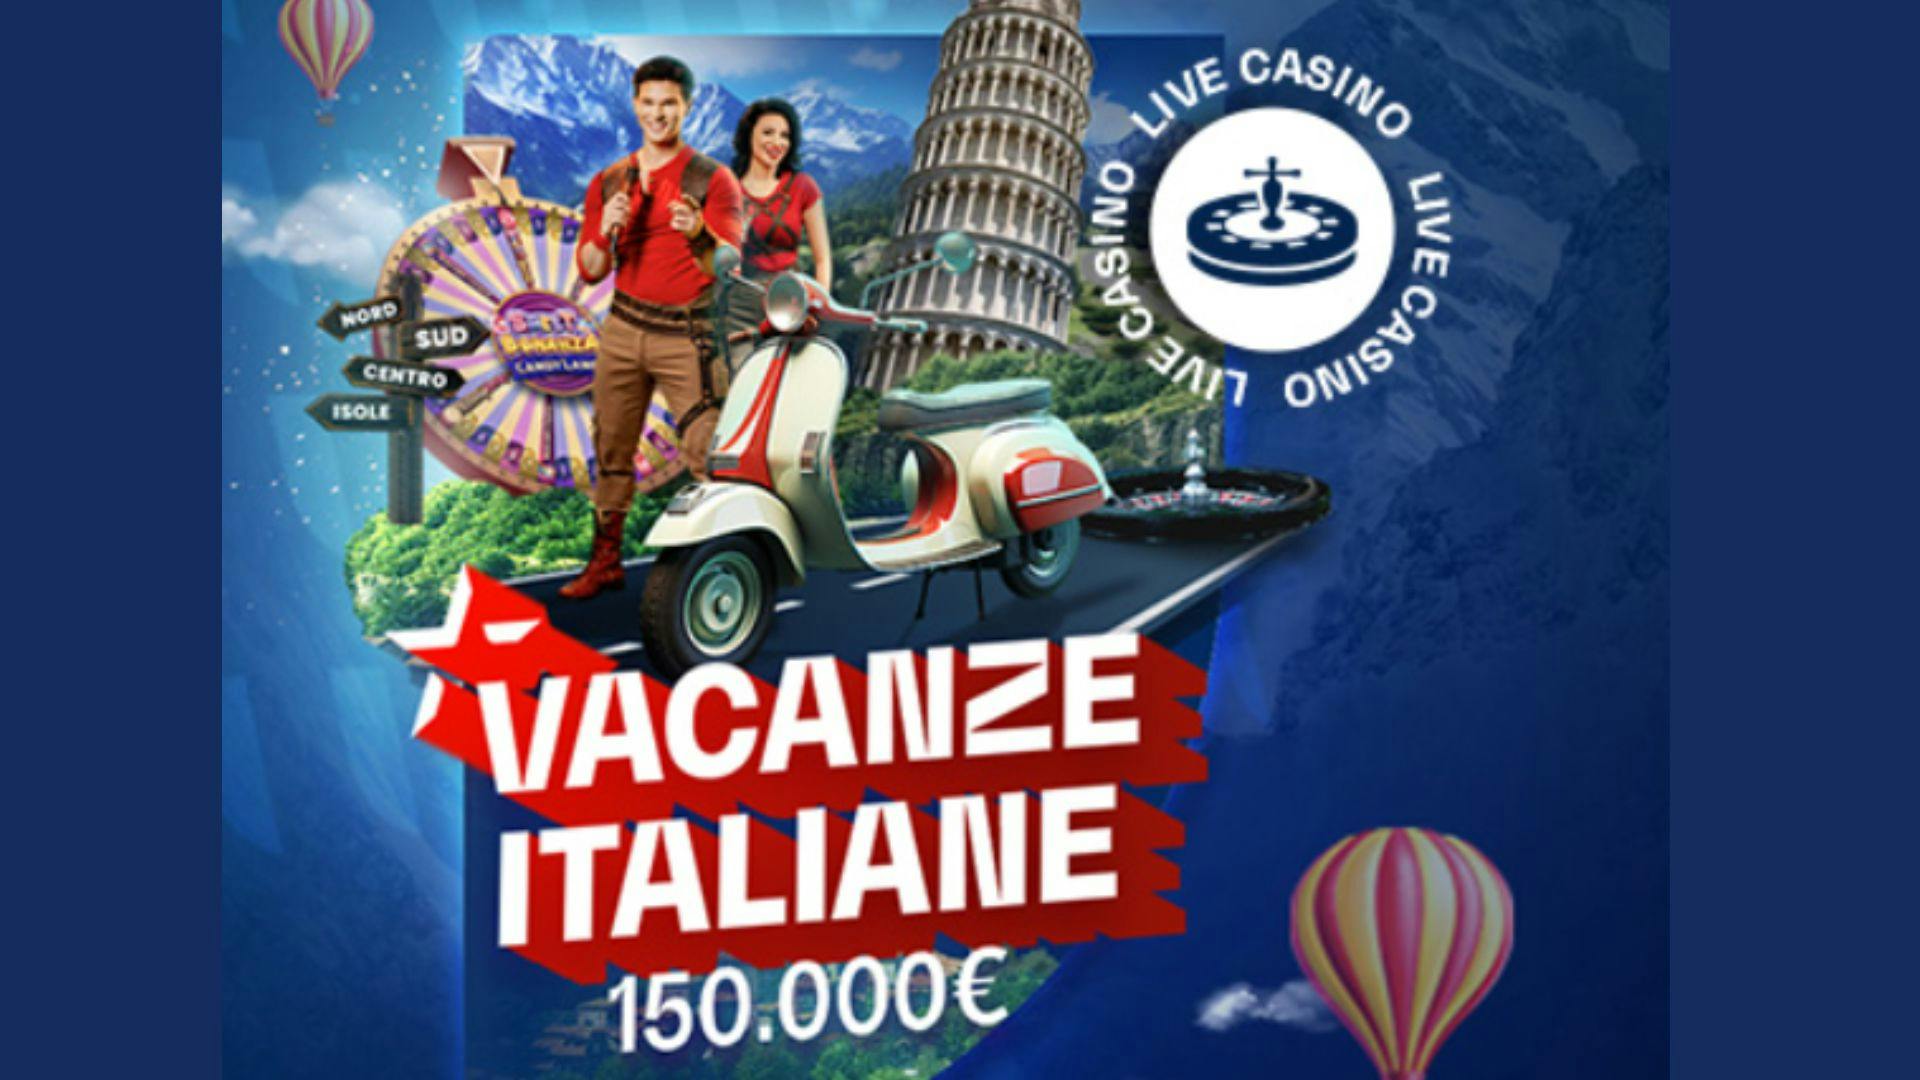 ‘Vacanze Italiane’: Intrattenimento e Premi con Pragmatic Play